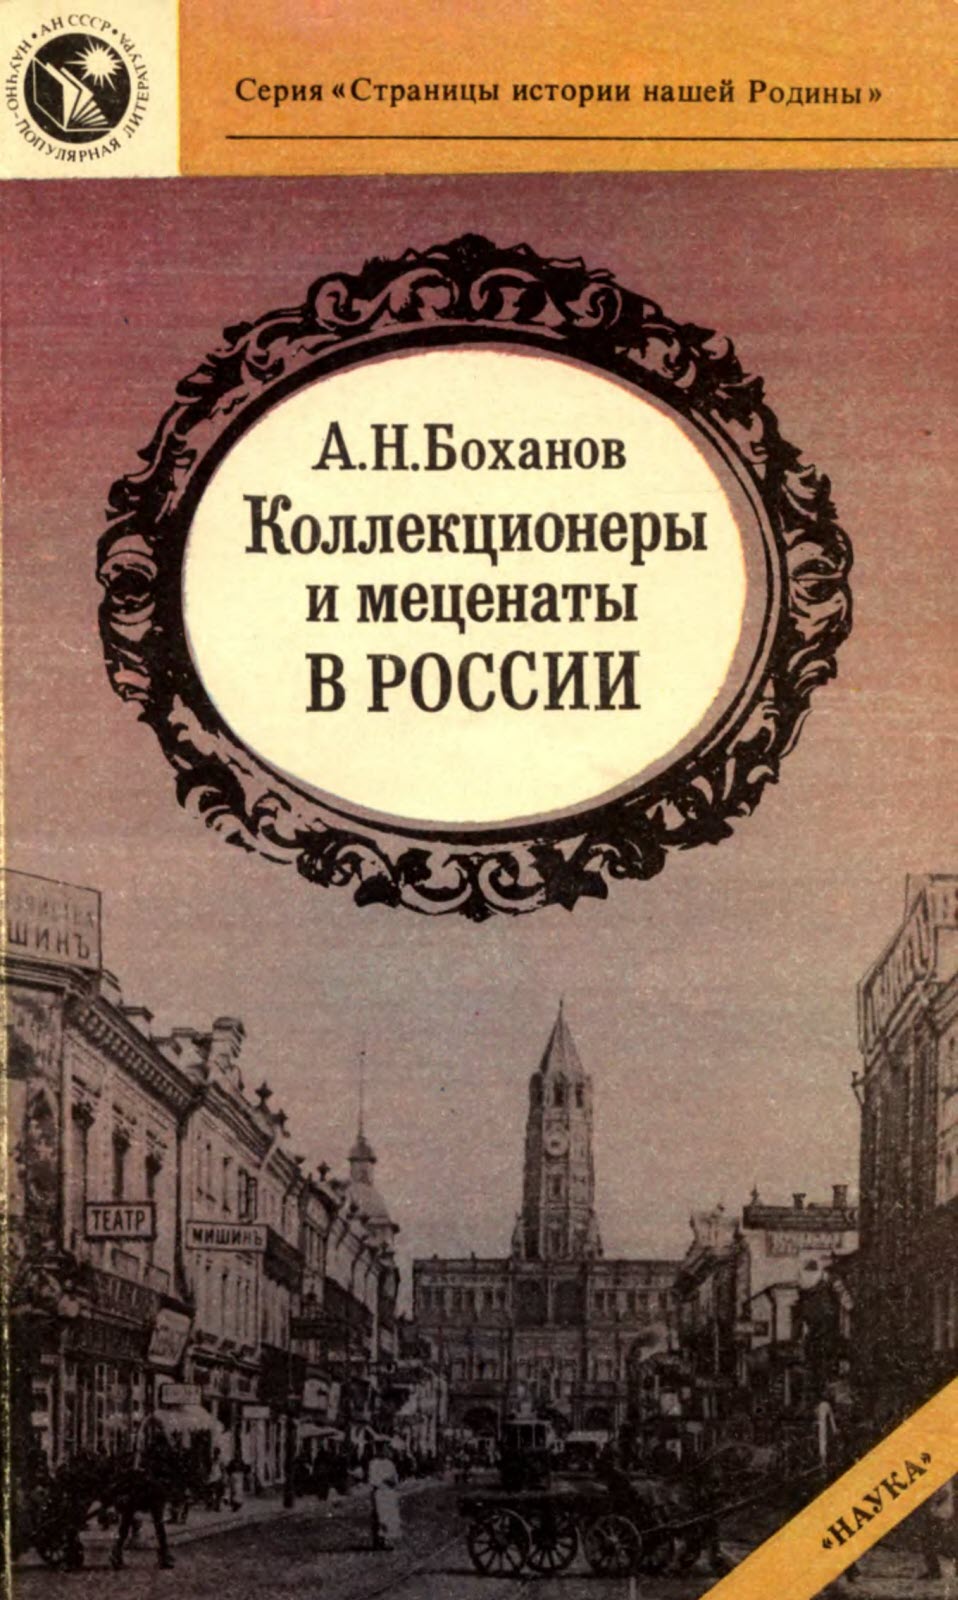 Коллекционеры и меценаты в России - Александр Николаевич Боханов